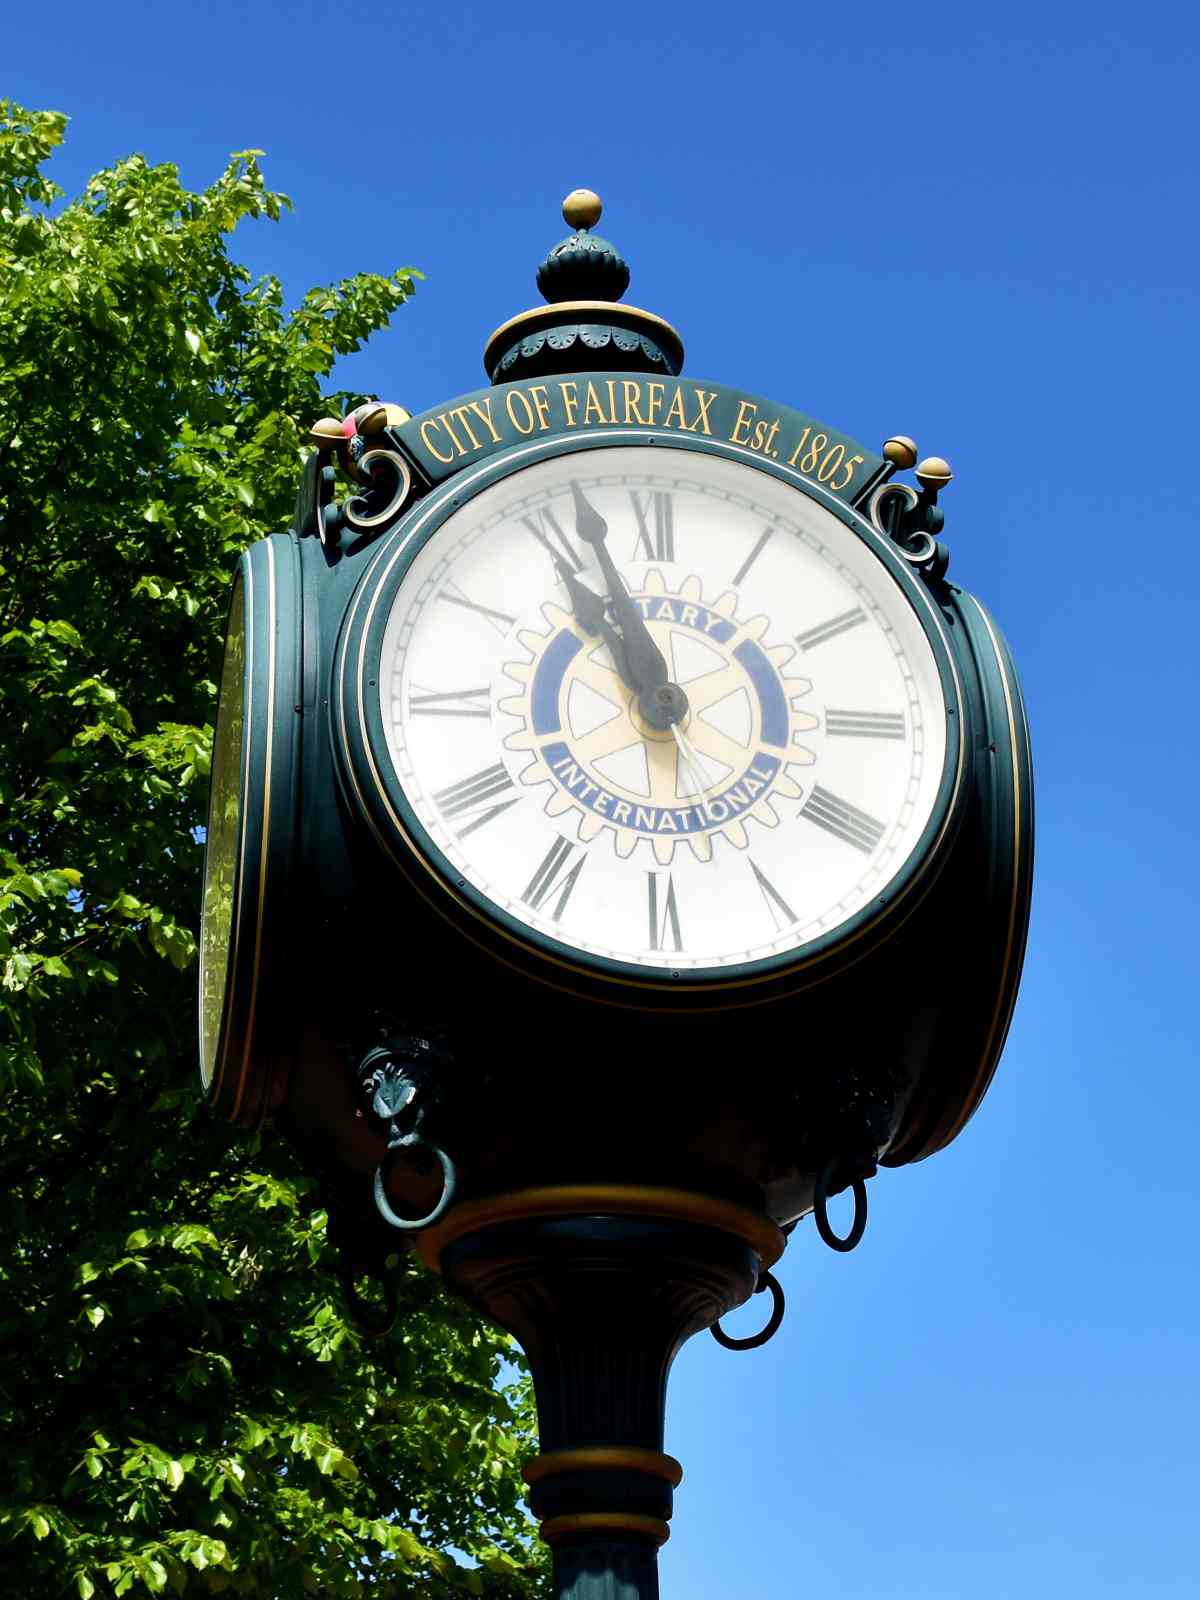 Fairfax, VA town clock